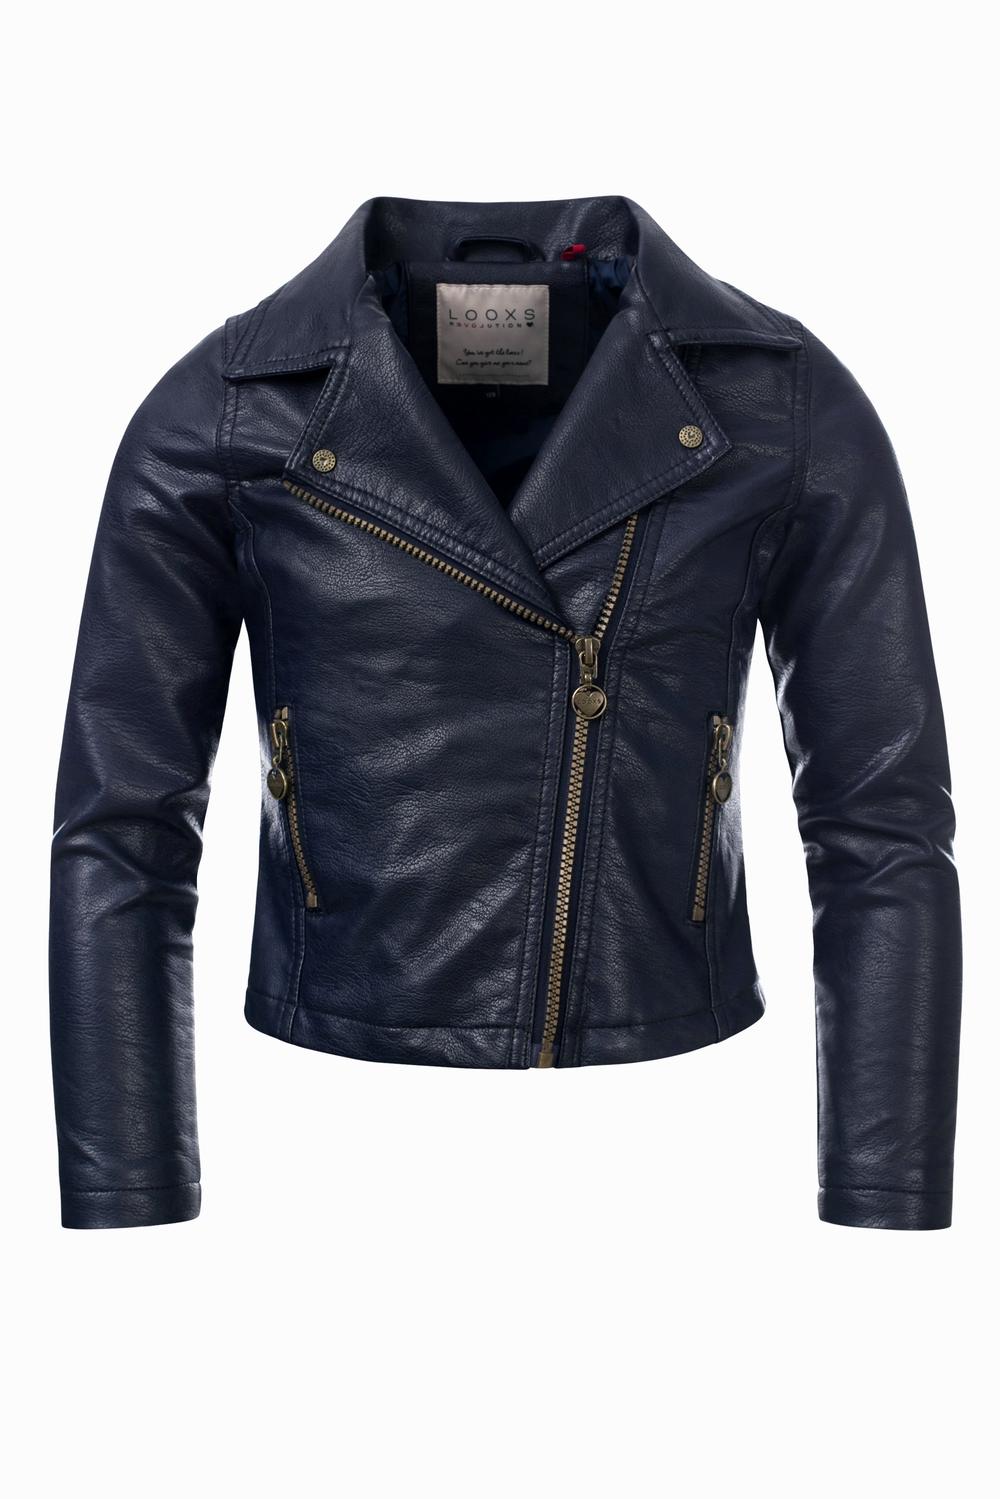 Loox's Revol. Biker jacket imitation leather blue